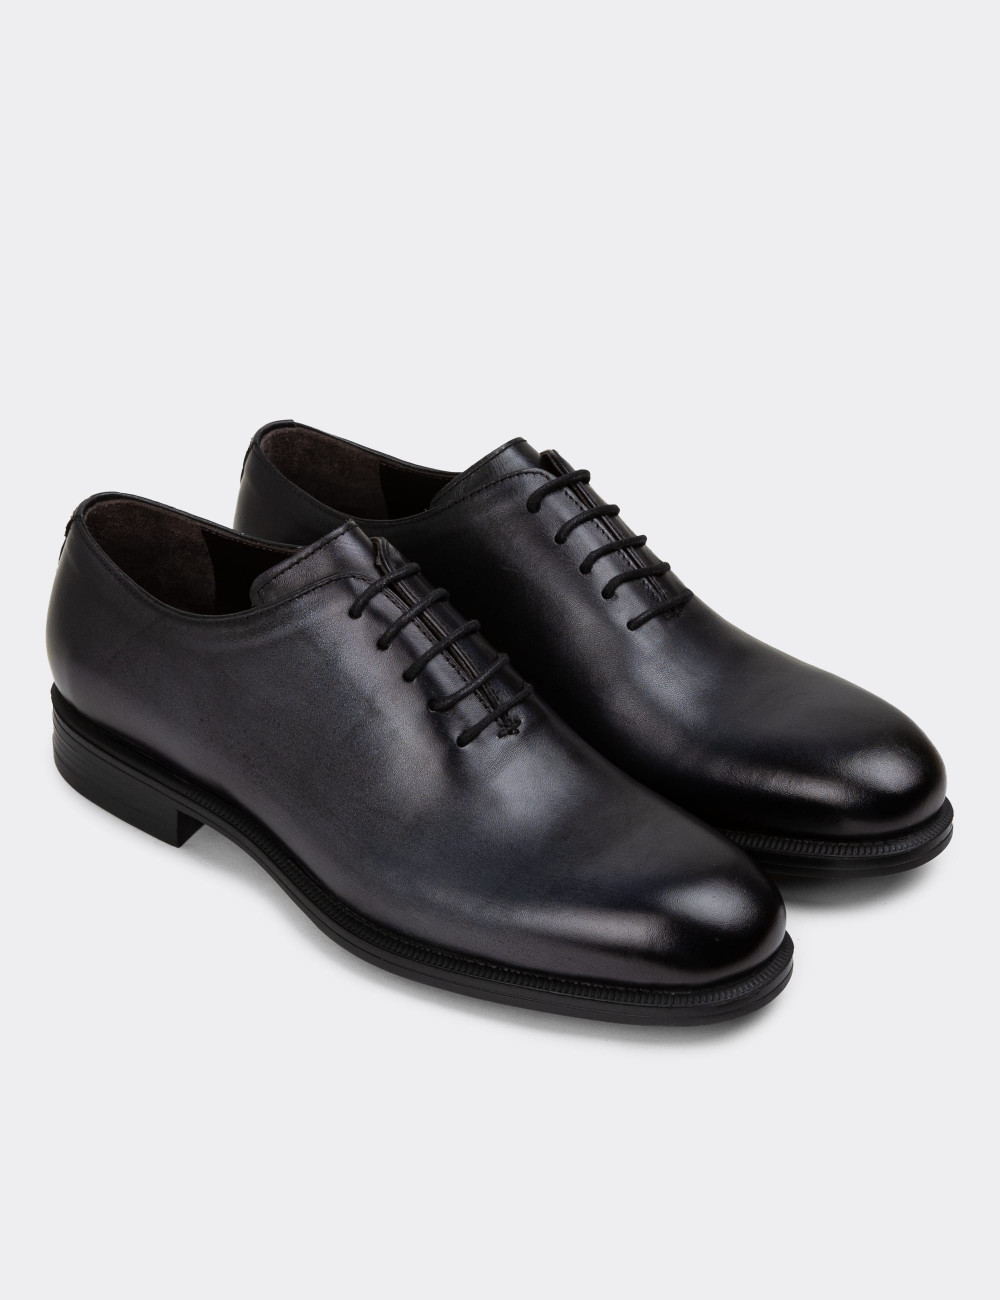 Hakiki Deri Antrasit Erkek Klasik Ayakkabı - 01830MANTC01